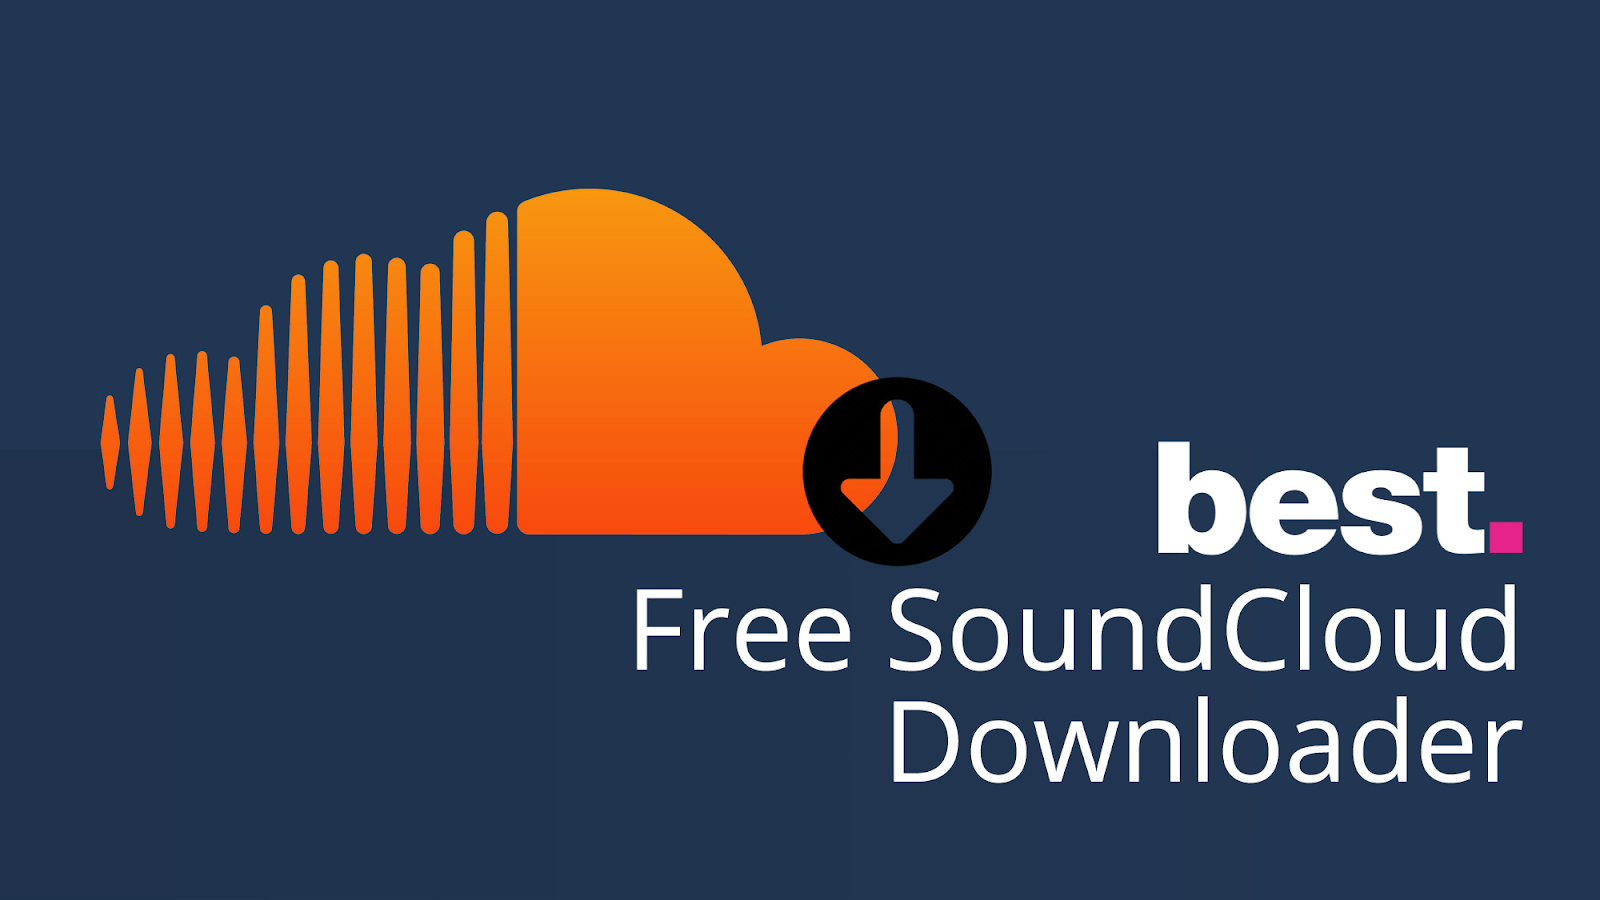 Downloader zoundcloud SoundCloud Download